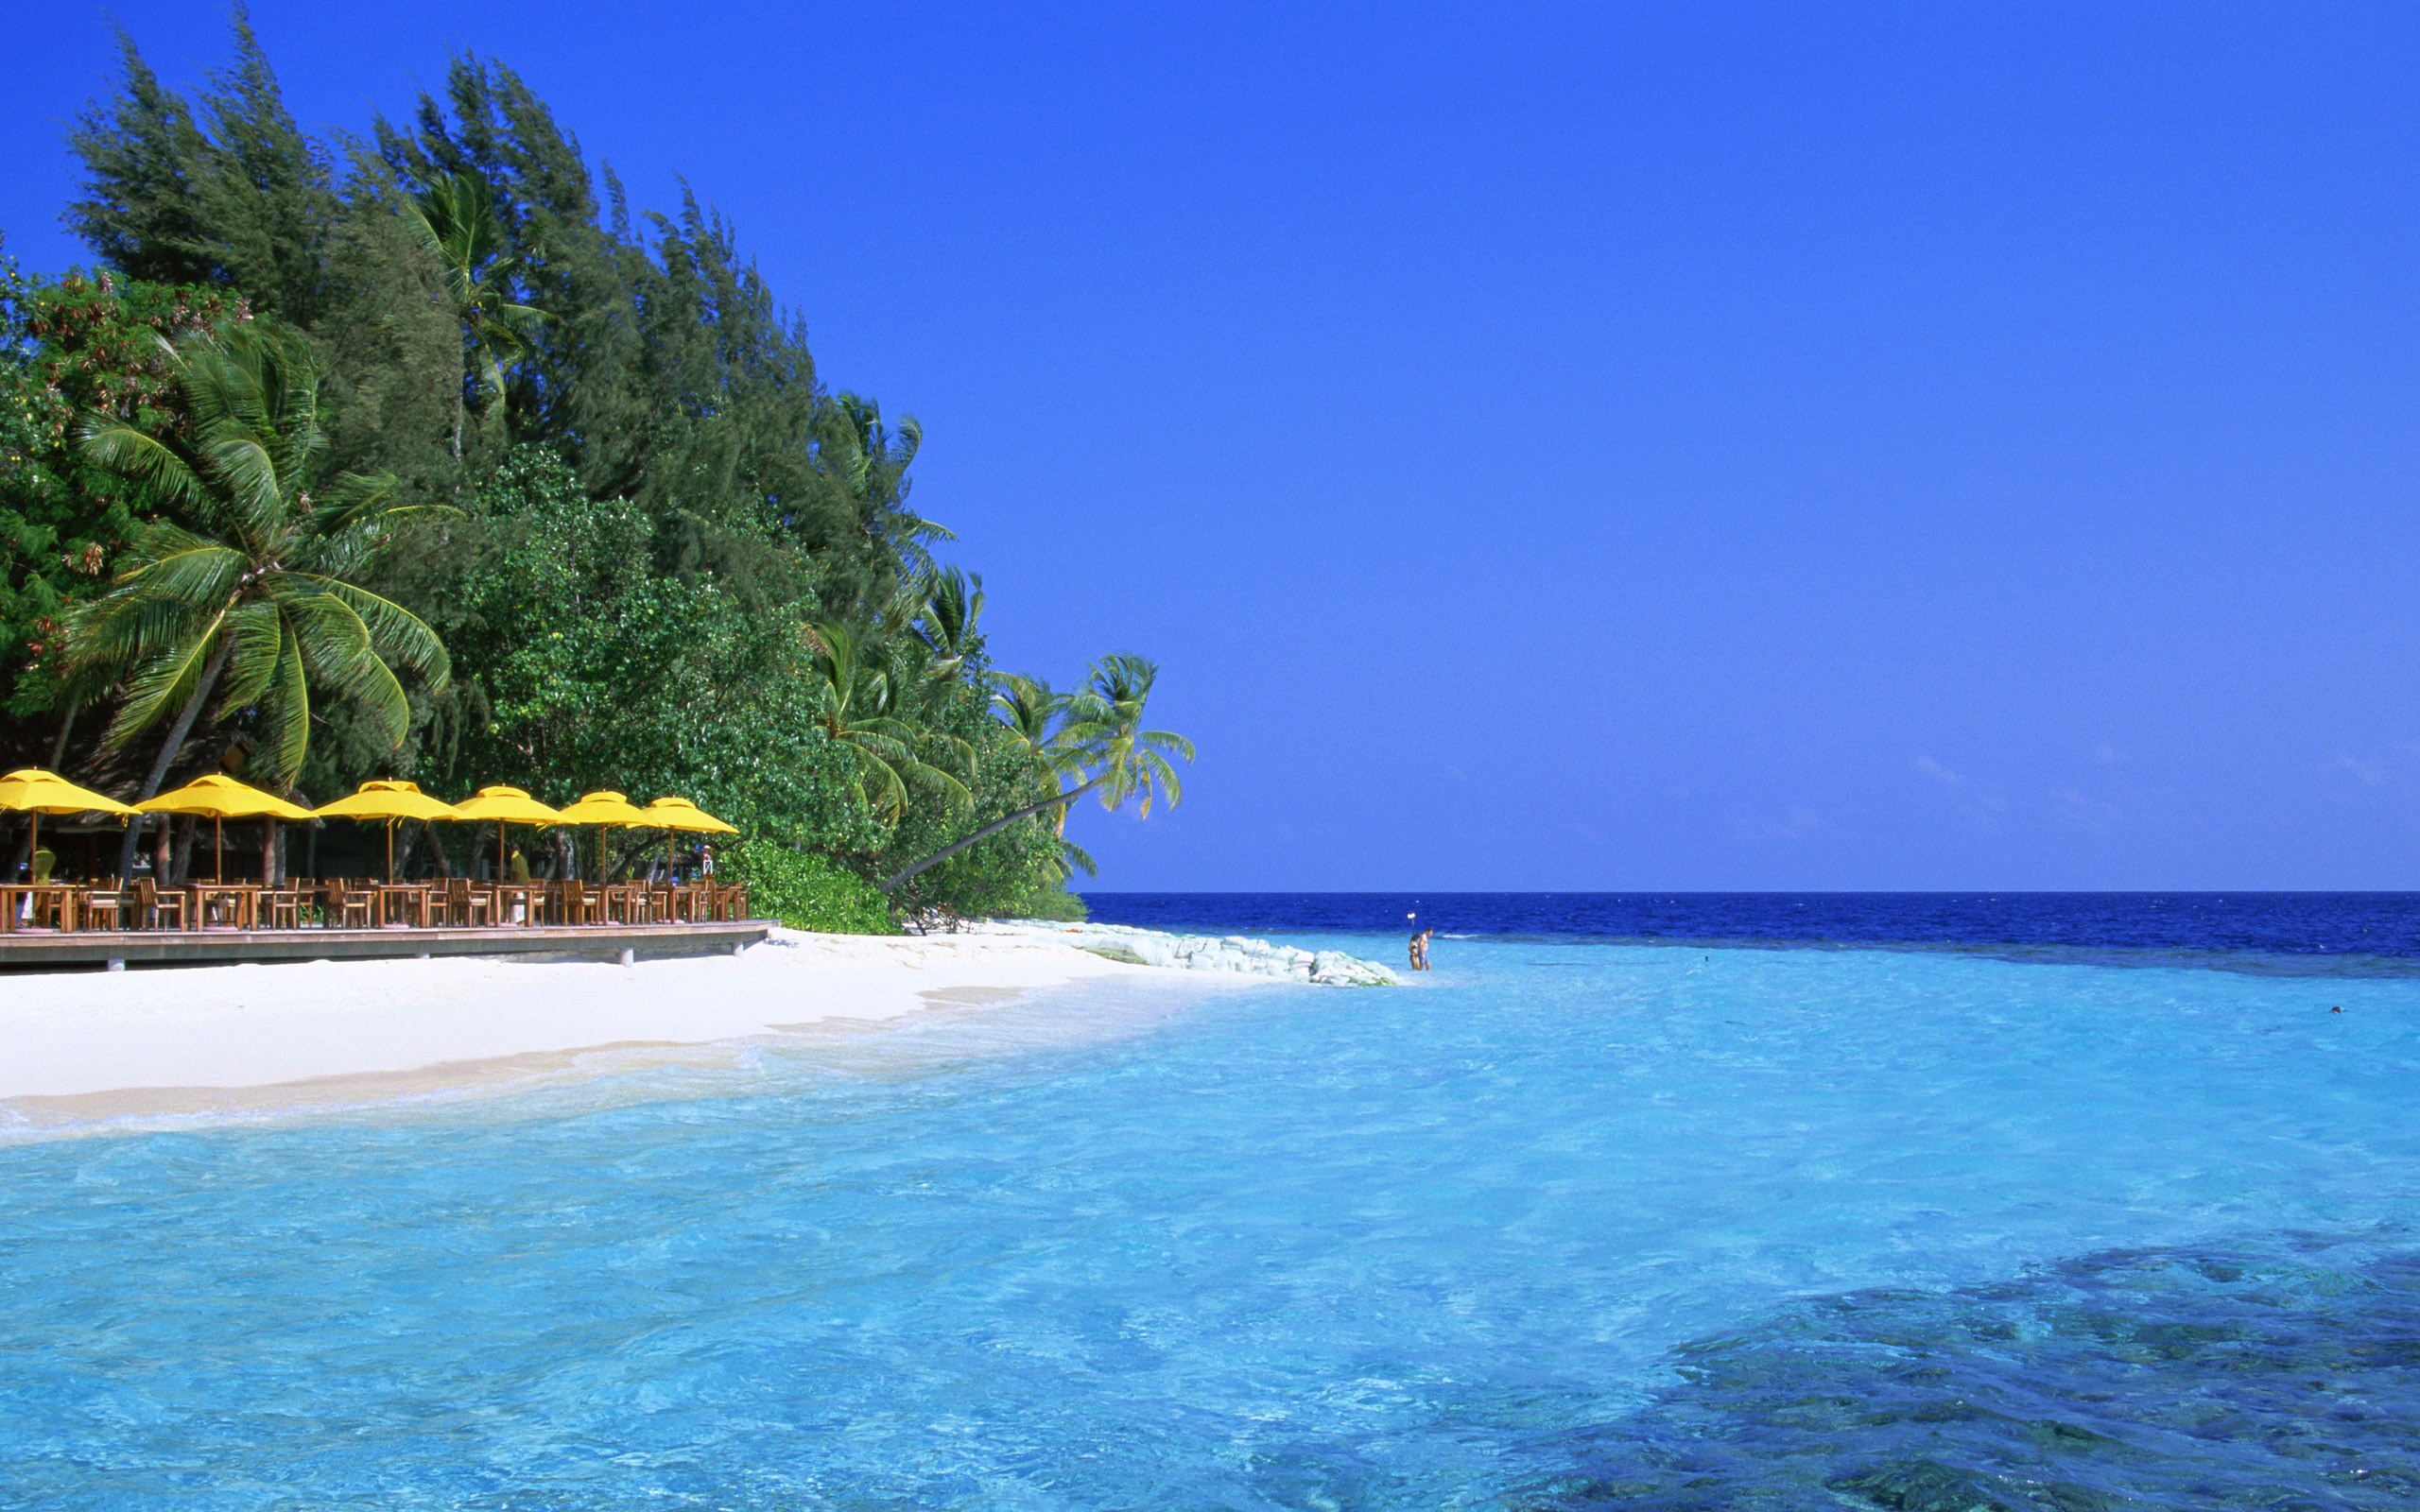 2560x1600 Beaches Islands HD Wallpapers, Beach Desktop Backgrounds, Images .